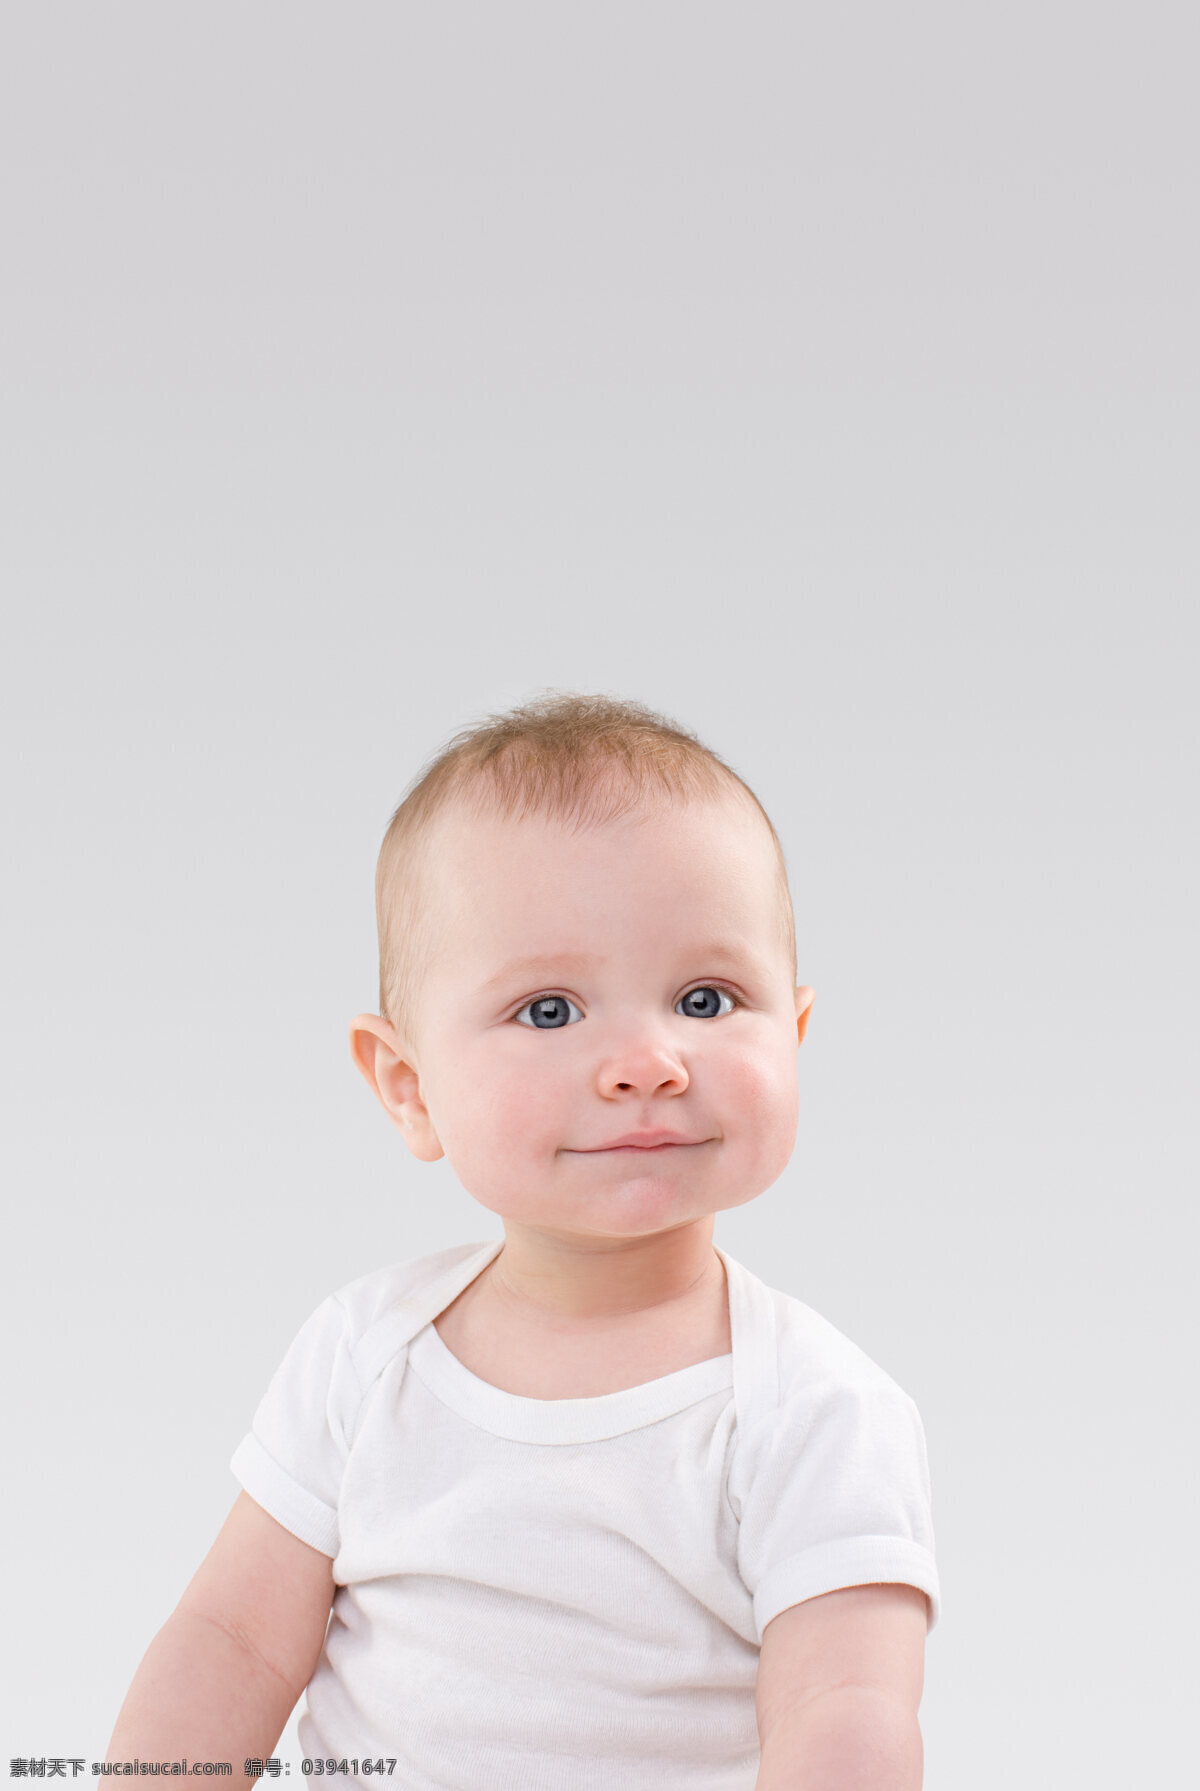 超酷 欧美 男婴 宝贝 大眼睛 白嫩 可爱 婴儿 白色 皮肤 微笑 快乐 儿童 欢乐 照片 海报 广告 高清图片 儿童图片 人物图片